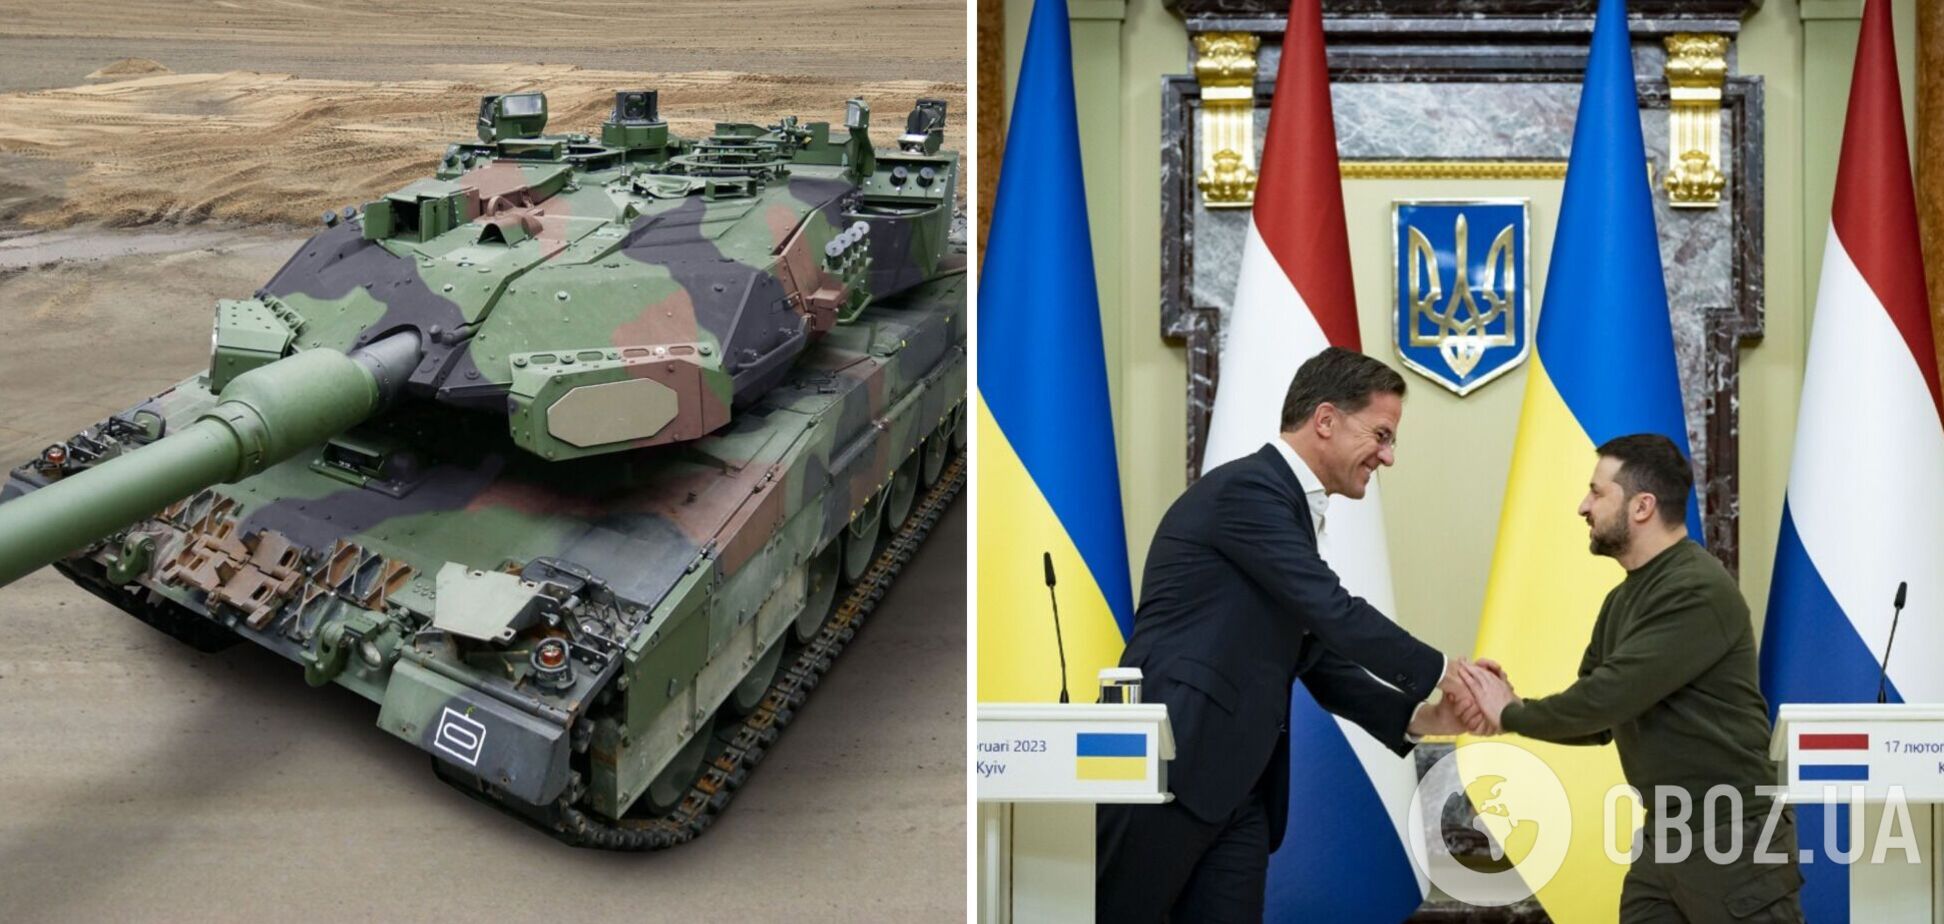 Нидерланды вместе с Германией и Данией предоставят Украине 100 танков Leopard, – Рютте